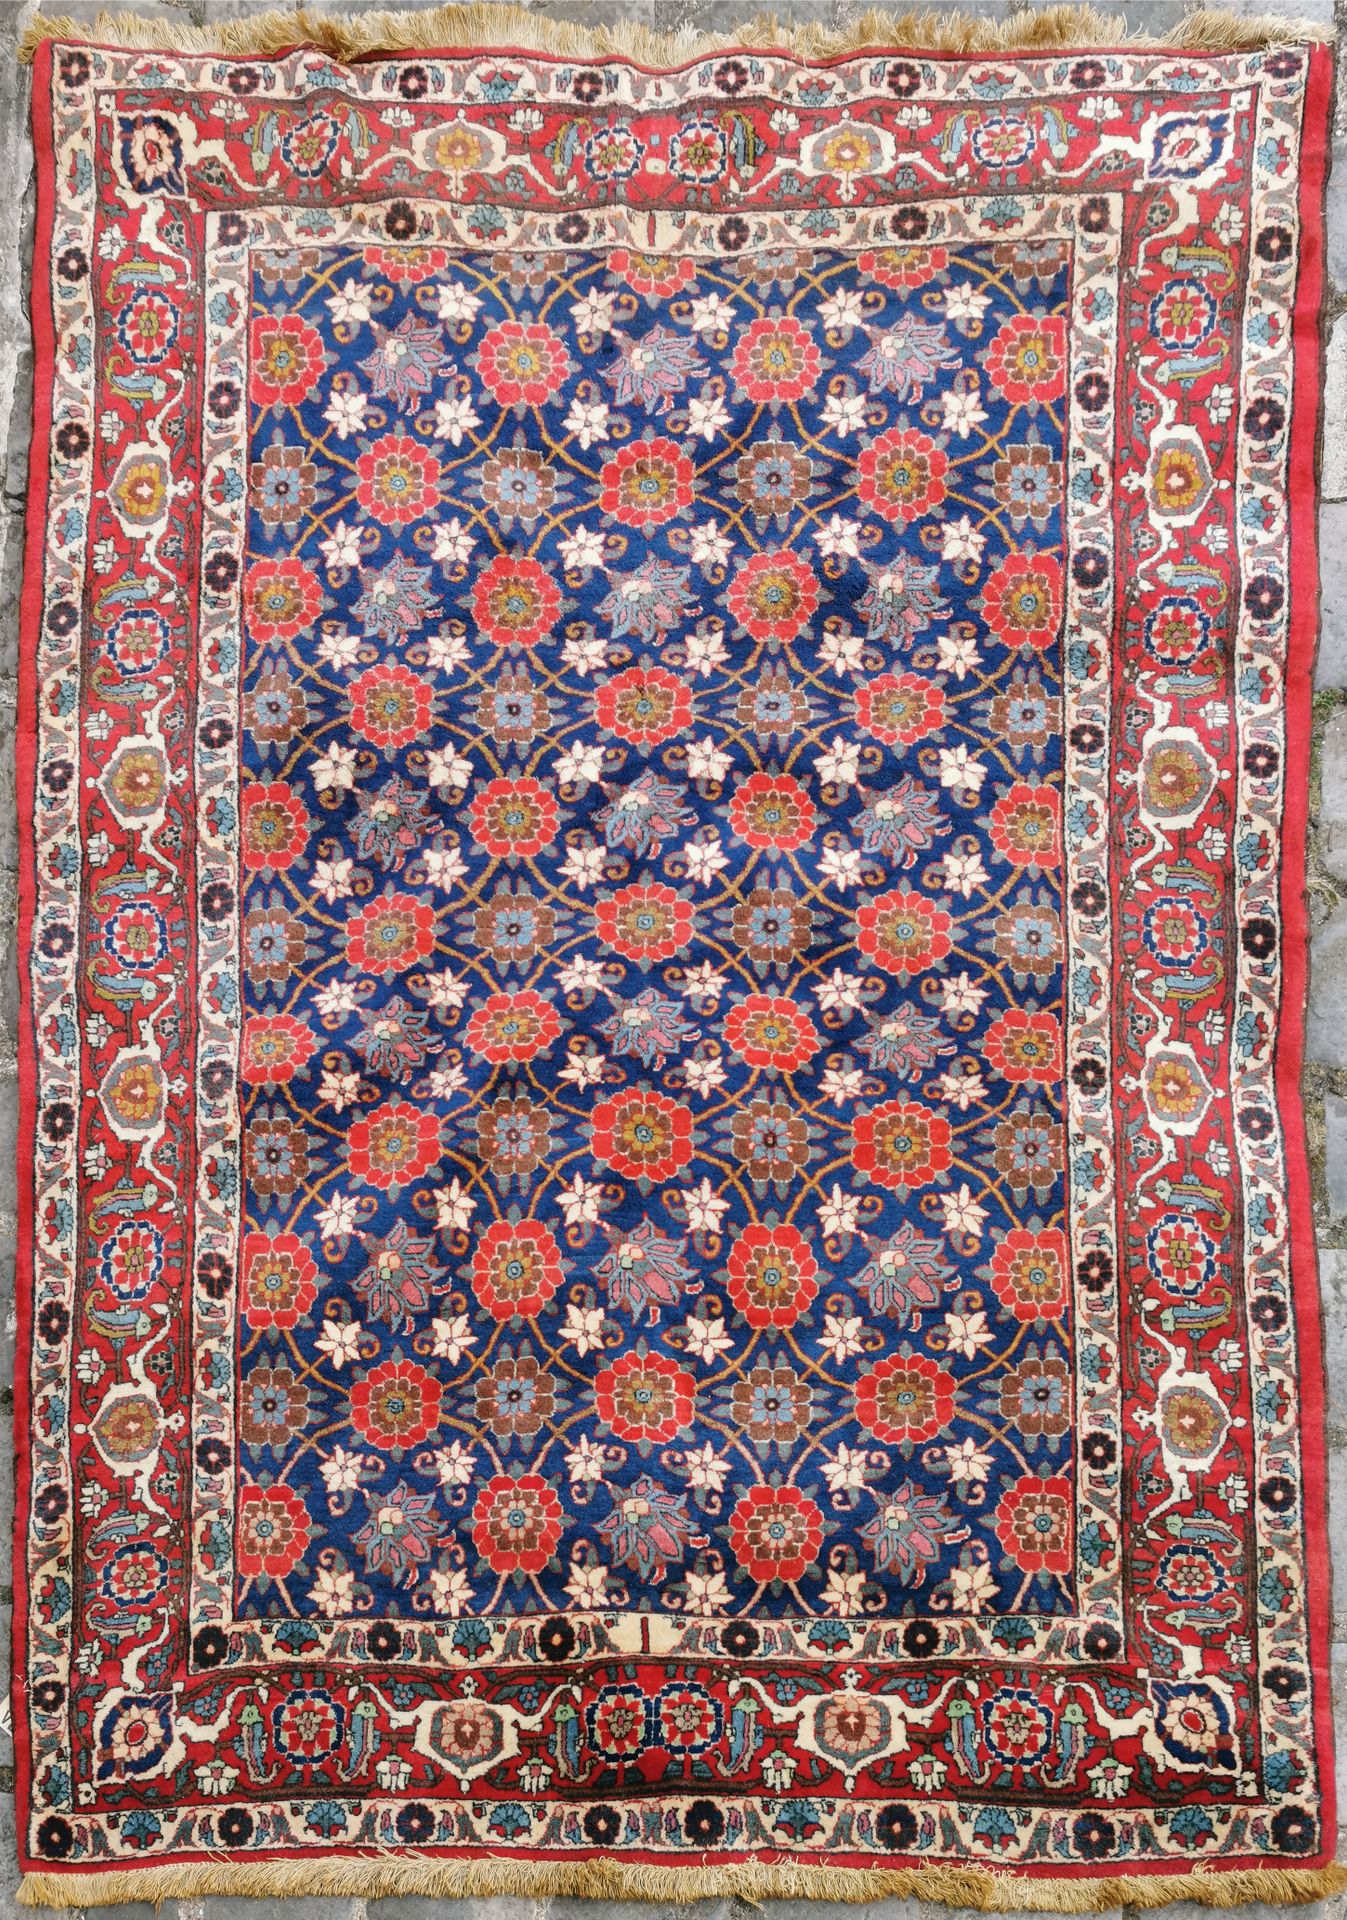 Null 晚期维拉明，德黑兰地区（伊朗），约1975年。

技术特点：棉质基础上的丝质羊毛绒。

普鲁士蓝场，有米娜卡尼装饰。

三重边框，主边框是红宝石龟壳。&hellip;